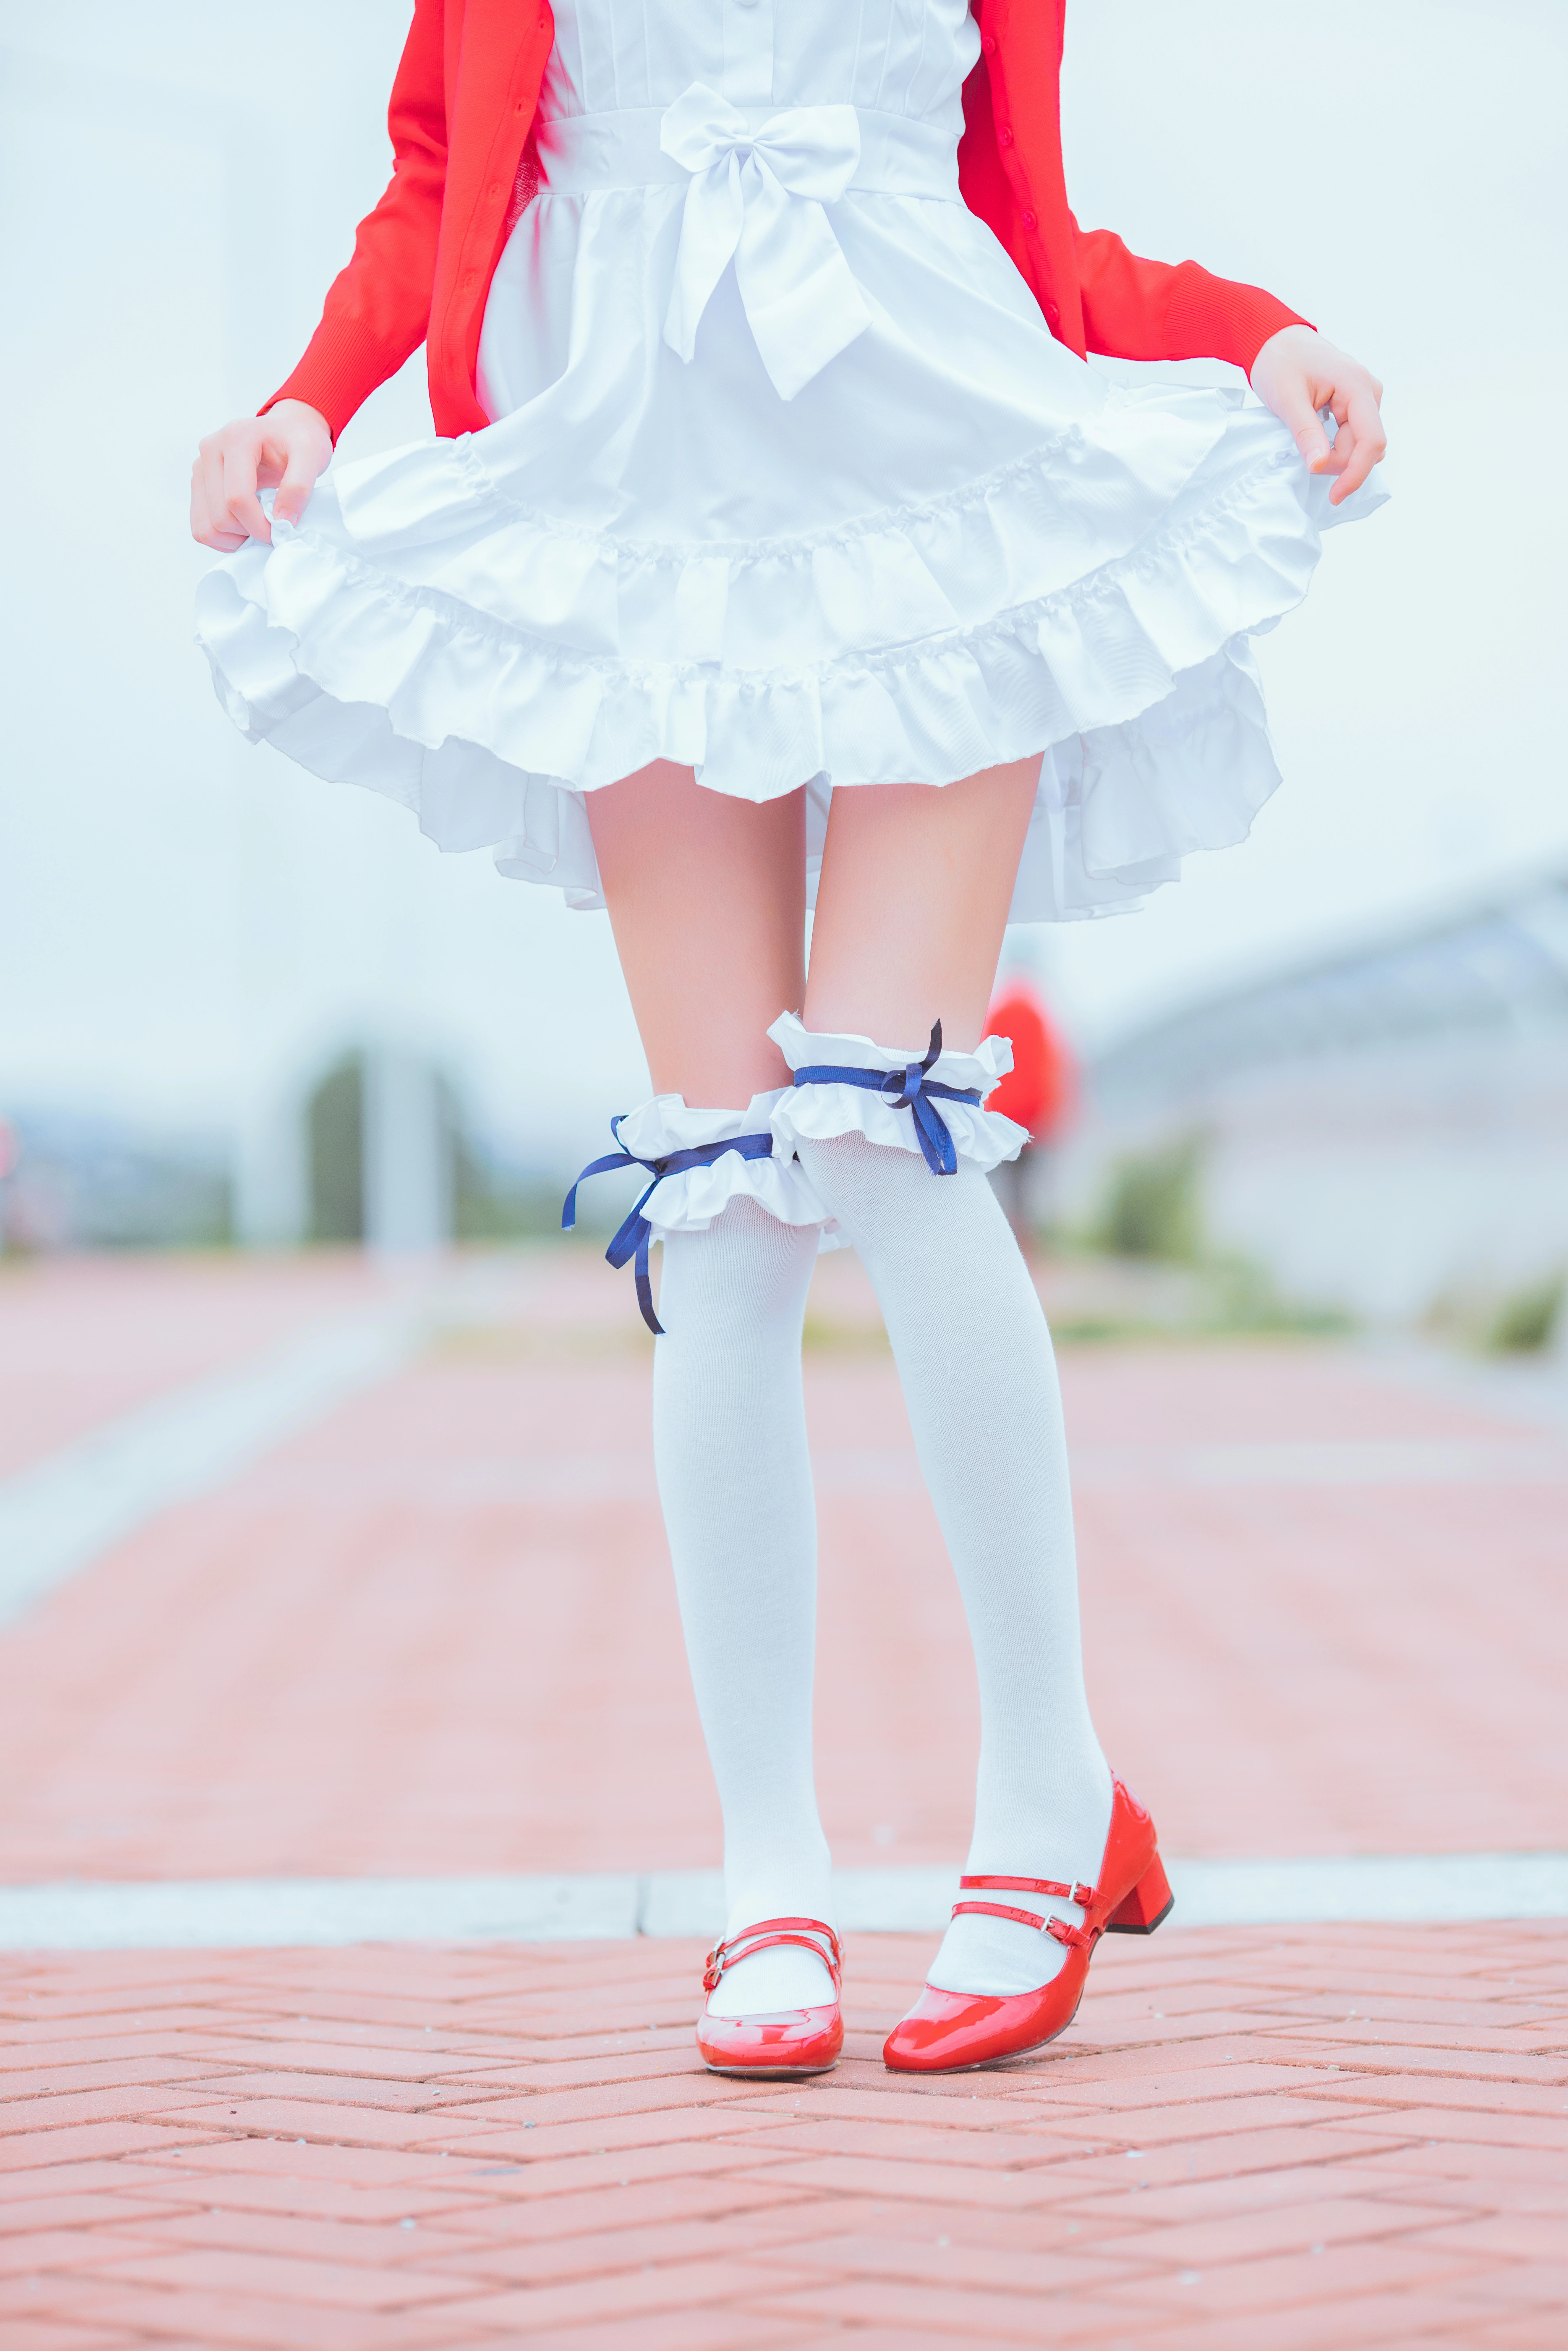 清纯少女 桜桃喵 红色外套与白色连衣裙加白色丝袜美腿街拍写真,0014